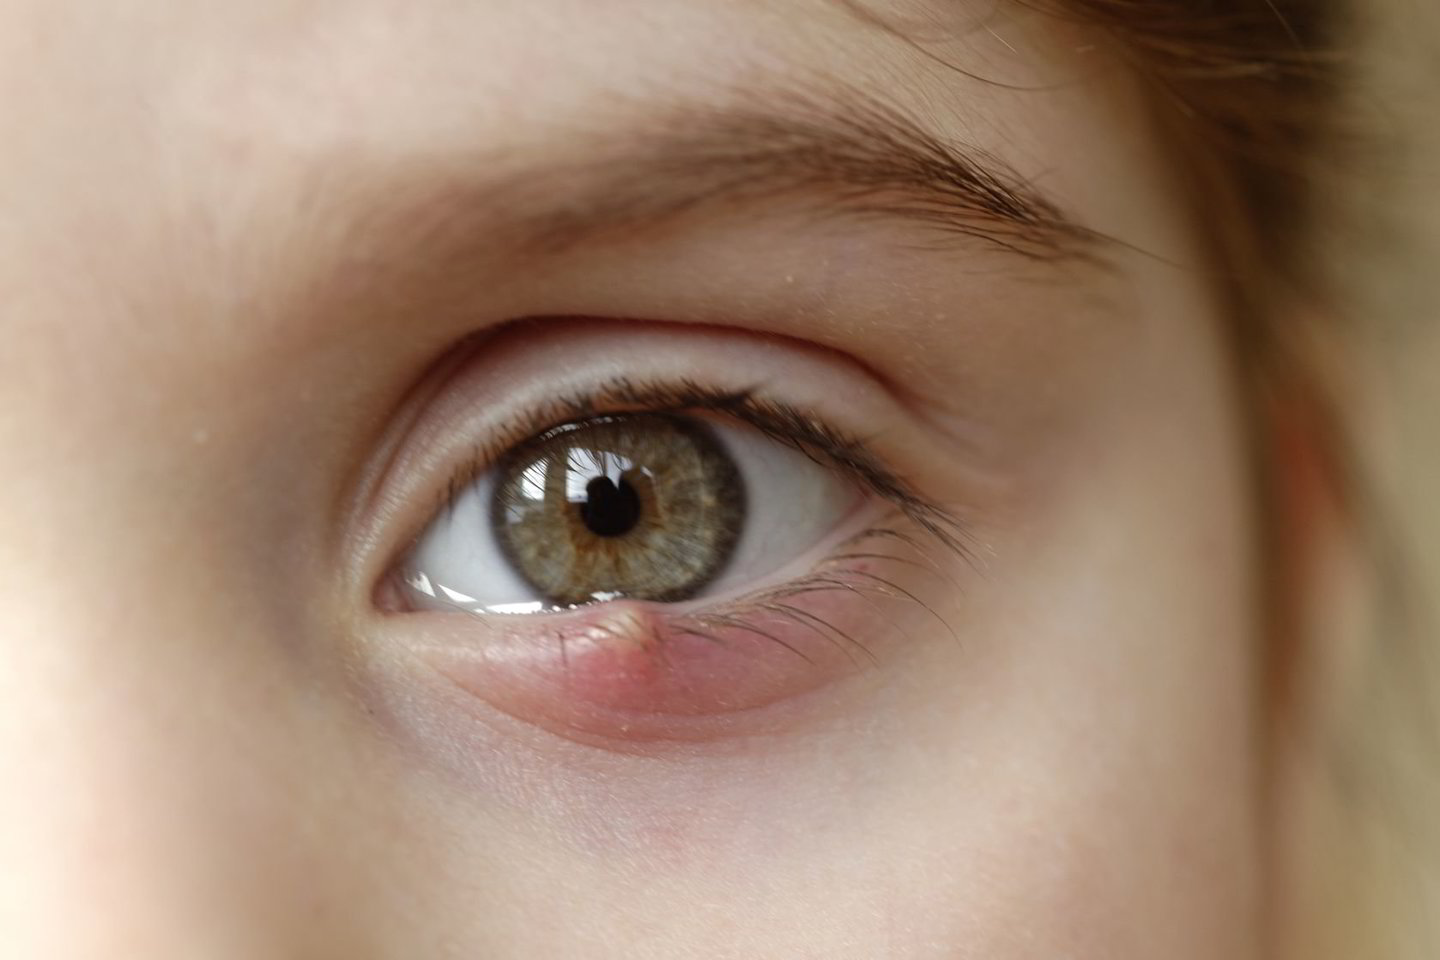  Dėl retos infekcinės ligos moters akyje buvo rastos 14 kirmėlių.<br> 123rf.com nuotr.